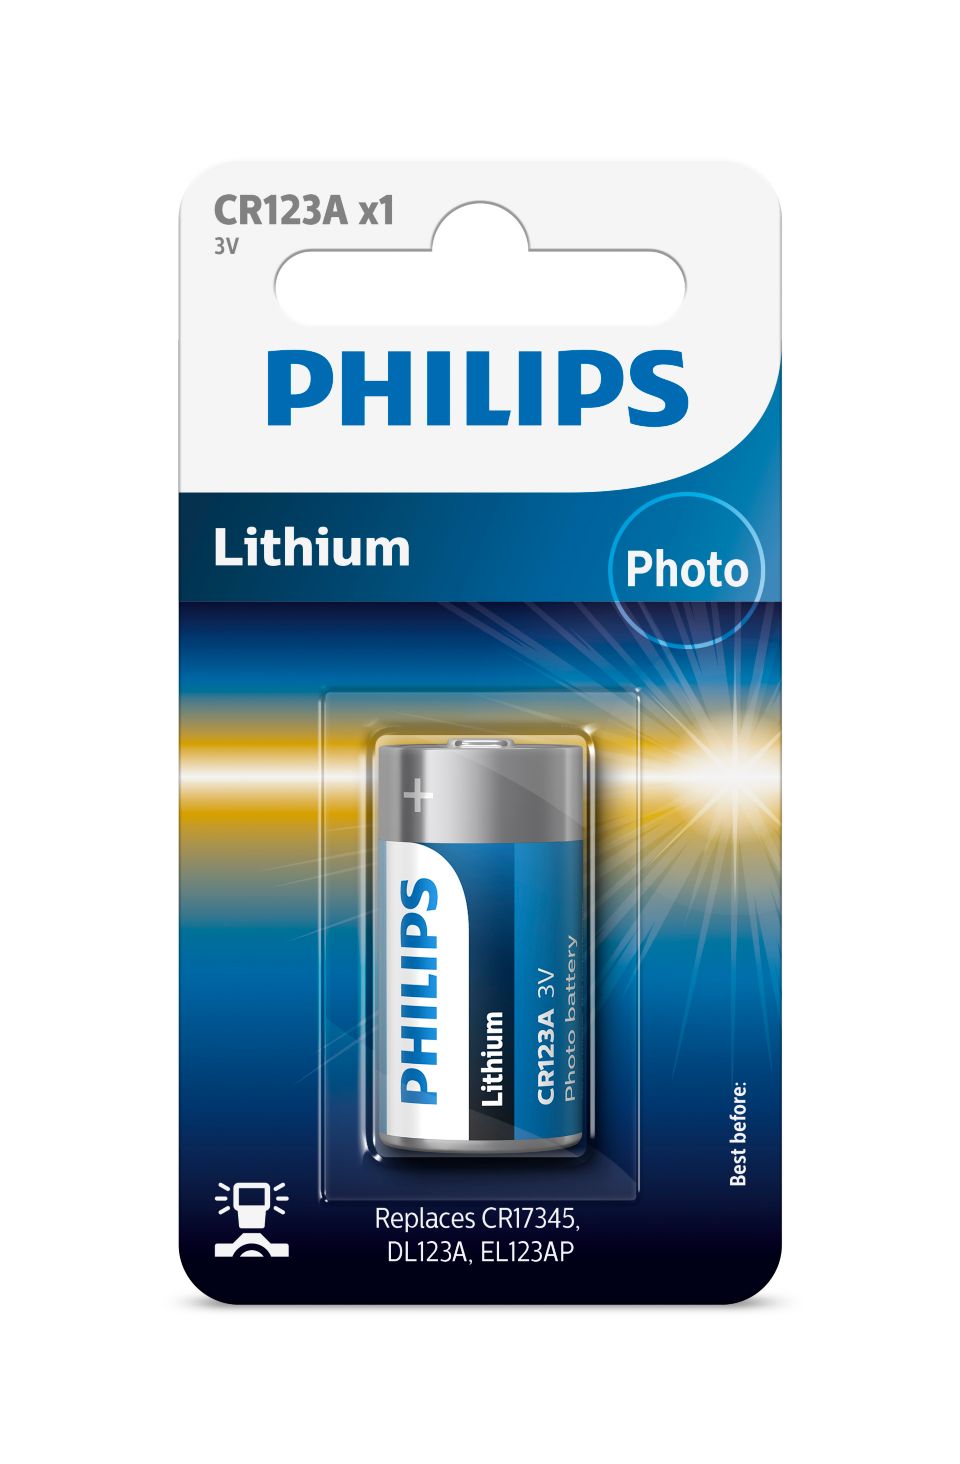 Hoogwaardige lithiumtechnologie voor uw camera